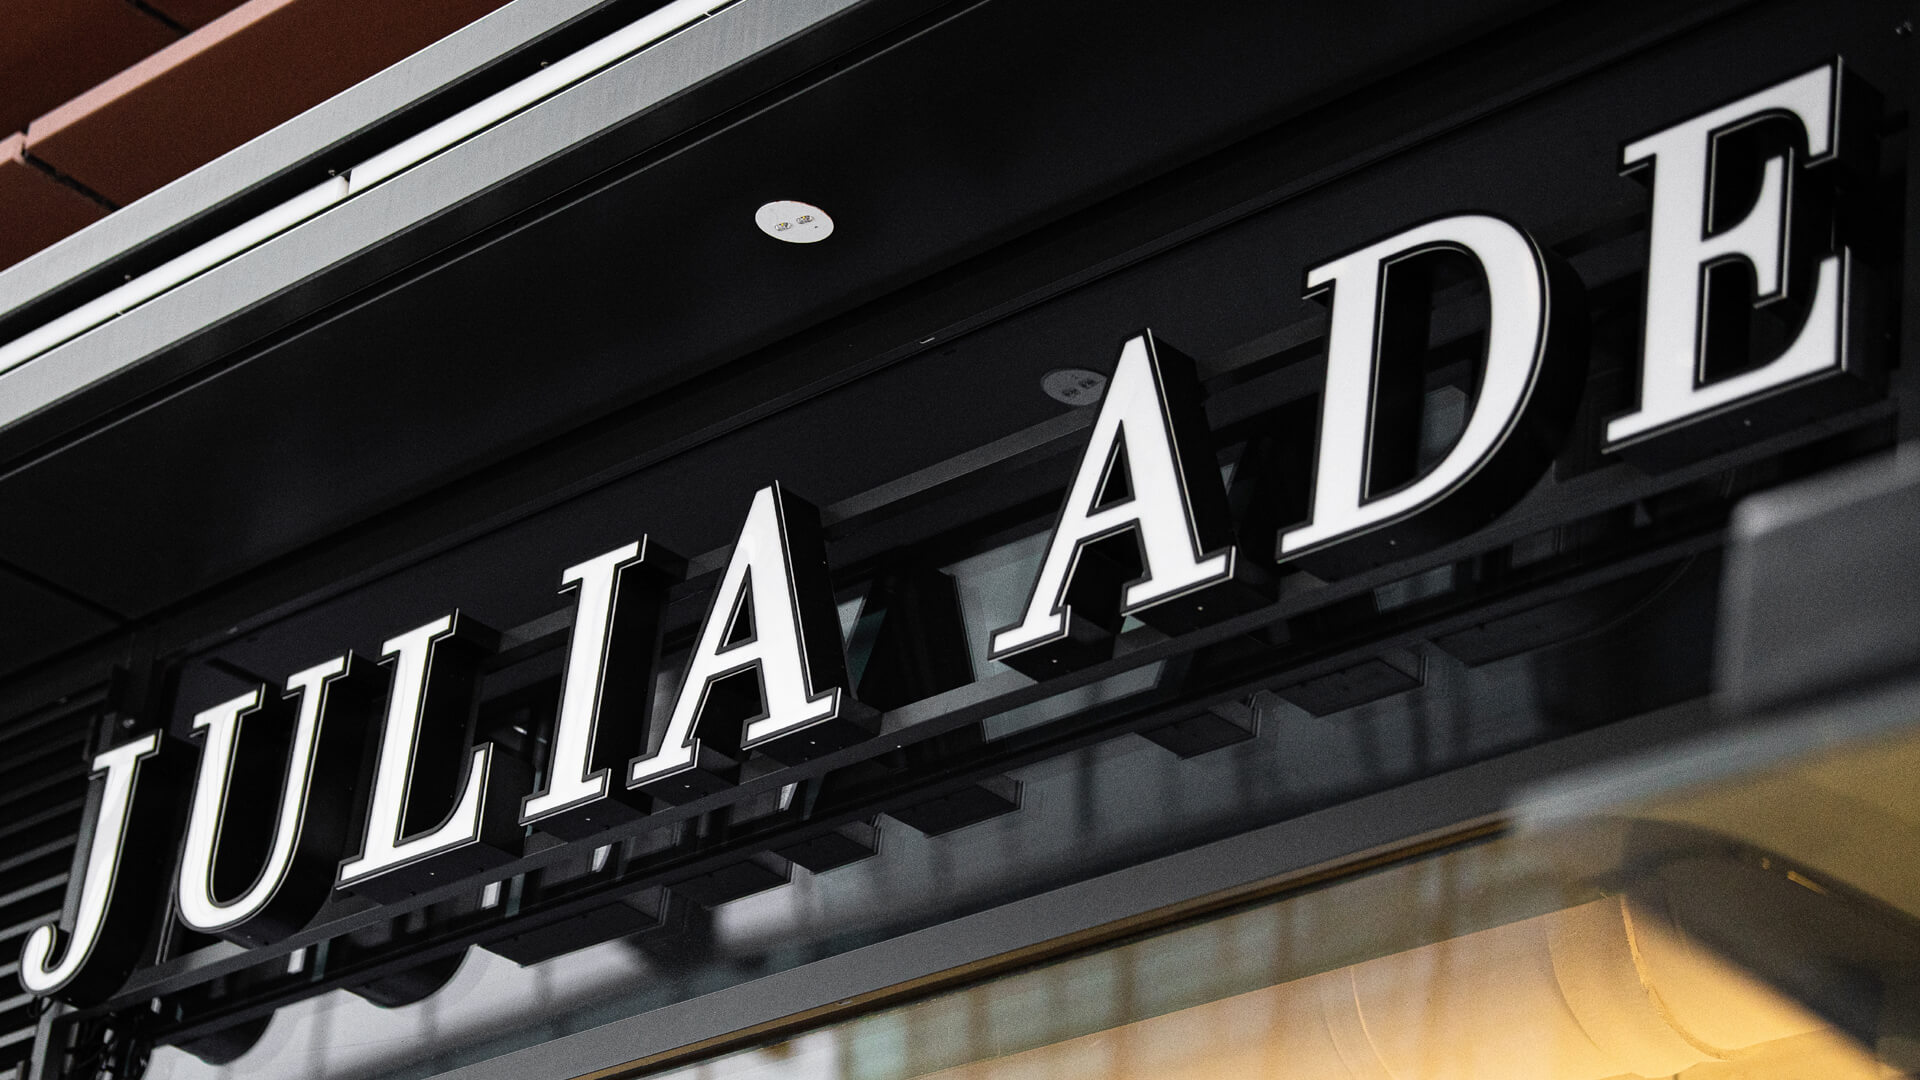 Julia Ade - Lettres 3D, éclairées en blanc, au-dessus de l'entrée.